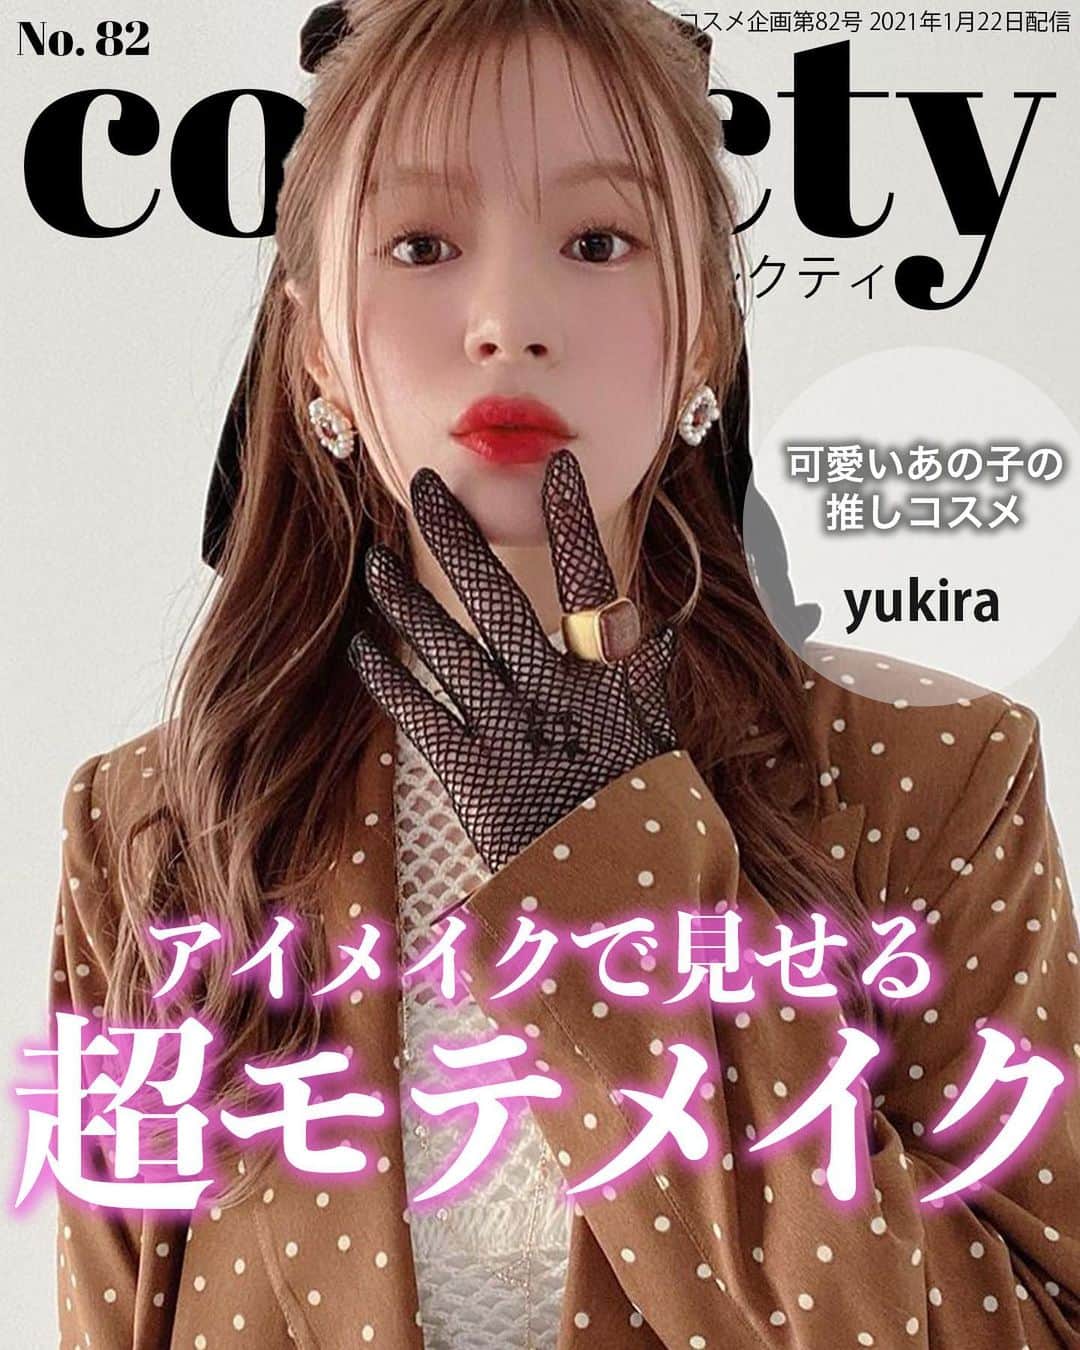 corectyさんのインスタグラム写真 - (corectyInstagram)「〜〜 #可愛いあの子の推しコスメ 〜〜﻿ ﻿ 日頃から、たくさんのファンからコスメや美容に関する質問を受けている人気インスタグラマー。﻿ ﻿ 今回は、yukiraさん ( @_yukira_ )の﻿ メイクとスキンケアの秘密を取材させていただきました💗﻿ ﻿ —————﻿ ﻿ — Q.1：愛用している化粧下地を教えて下さい♡﻿  A.　#CNP シカブロックプライマー﻿ ﻿ 赤み肌なので、綺麗に赤みを抑えてくれるのとピタって感じなのでヨレない！﻿ ﻿ ﻿  — Q.2：愛用ファンデーションを教えて下さい♡  A. #MilkTouch ロングラスティングベルベット光彩クッション 21﻿ ﻿ 薄づきなので、化粧してる感がでないから好きなのとマスクにつかない♡﻿ ﻿ ﻿ — Q.3：愛用コンシーラーを教えて下さい♡  A. #ザセム カバーパーフェクションチップコンシーラー01﻿ ﻿ カバー力がすごい！﻿ 1回で気になるところを隠してくれるので使いやすい。﻿ そして小さいのに全然無くならない！﻿ ﻿ ﻿ — Q.4：愛用のフェイスパウダーを教えて下さい♡  A. #トムフォード イルミネイティング パウダー 02﻿ ﻿ 肌馴染みのいいピンクなので、﻿ 肌を明るくしてくれるしサラッとしてて塗った感がでない！﻿ ﻿ ﻿  — Q.5：ベースメイクで大切にしているポイントを教えて下さい♡﻿ ﻿ 素肌感が絶対！！﻿ すっぴん？って言われるくらいナチュラルに仕上げるのを心がけてます♡﻿ ﻿ ﻿  — Q.6：愛用アイシャドウを教えて下さい♡﻿ ﻿ A.  #ロムアンド ベターザンアイズ02﻿ ﻿ ピンクベースだけどすごい派手な感じでなくて4色で仕上げられる。﻿ ラメがちゃんとのってくれるのもお気に入り♡﻿ ﻿ ﻿  — Q.7：愛用アイライナーを教えて下さい♡﻿ ﻿ A.  #ラブライナー リキッドアイライナー ダークブラウン ﻿ 何本もいろんなアイライナーを試してみて結局戻るのはこれ！﻿ 何よりも描きやすくて、ダークブラウンの色が﻿ 暗くもなく明るくもない絶妙なところがとても好み♡﻿ ﻿ ﻿  — Q.8：愛用マスカラを教えて下さい♡﻿ ﻿ A.  #スカルプD マスカラ ロングダークブラウン ﻿ ダマにならずにぬれる！﻿ まつ毛ケアもできて、これを使いだしてからまつ毛がチリチリする感じが無くなった。﻿ ﻿ ﻿  — Q.9：愛用リップを教えて下さい♡﻿ ﻿ A. #イヴサンローラン ルージュピュールクチュールヴェルニ ウォーターステイン 617﻿ ﻿ Twitterでバズってて気になってた粘膜リップ！﻿ 密着するリップて相性が合わないとポロポロしてきたりするけどこれは全くない。﻿ 乾いた唇にもそのままぬれるし色がとっても可愛い♡﻿ ﻿ ﻿  — Q.10：ポイントメイクで大切にしているポイントを教えて下さい♡﻿ ﻿ 涙袋があまりないので、﻿ アイシャドウでつくることによって中顔面を短く見せれるしぷっくり可愛い目元になる♡﻿ ﻿ ﻿  — Q.11：愛用スキンケアアイテムを教えて下さい♡﻿ ﻿ A. ﻿ #vt シカスキン﻿ #クリスティーナ テラスキン﻿ #ミルクタッチ ヘデラヘリックスバランスクリーム﻿ ﻿ 赤み肌なので赤みを抑えるために鎮静系のものを使うことが多いです。﻿ 最近だとCICA系のもの。﻿ あとは保湿をしっかりしてあげること。﻿ ﻿ ﻿  — Q.12：最後に、メイク全体で大切にしているポイントを教えて下さい♡﻿ ﻿ バランスを考える。﻿ ブラウンのマスカラやアイライナーなど統一させてバラバラなものをあまり使わない。﻿ 目元も馴染むように肌の色と合わせながら使っていく。﻿ ﻿ ﻿ お忙しい中、ご協力して頂きありがとうございました♡﻿ —————﻿ ﻿ ﻿ #コスメ #コスメ垢 #コスメ紹介 #コスメ好きな人と繋がりたい #コスメマニア #おすすめコスメ #ベストコスメ #美容垢さんと繋がりたい #メイク #デイリーメイク #ベースメイク #アイシャドウ #スキンケア #美容液 #ファンデーション #化粧下地 #口紅 #リップメイク」1月22日 12時06分 - corecty_net